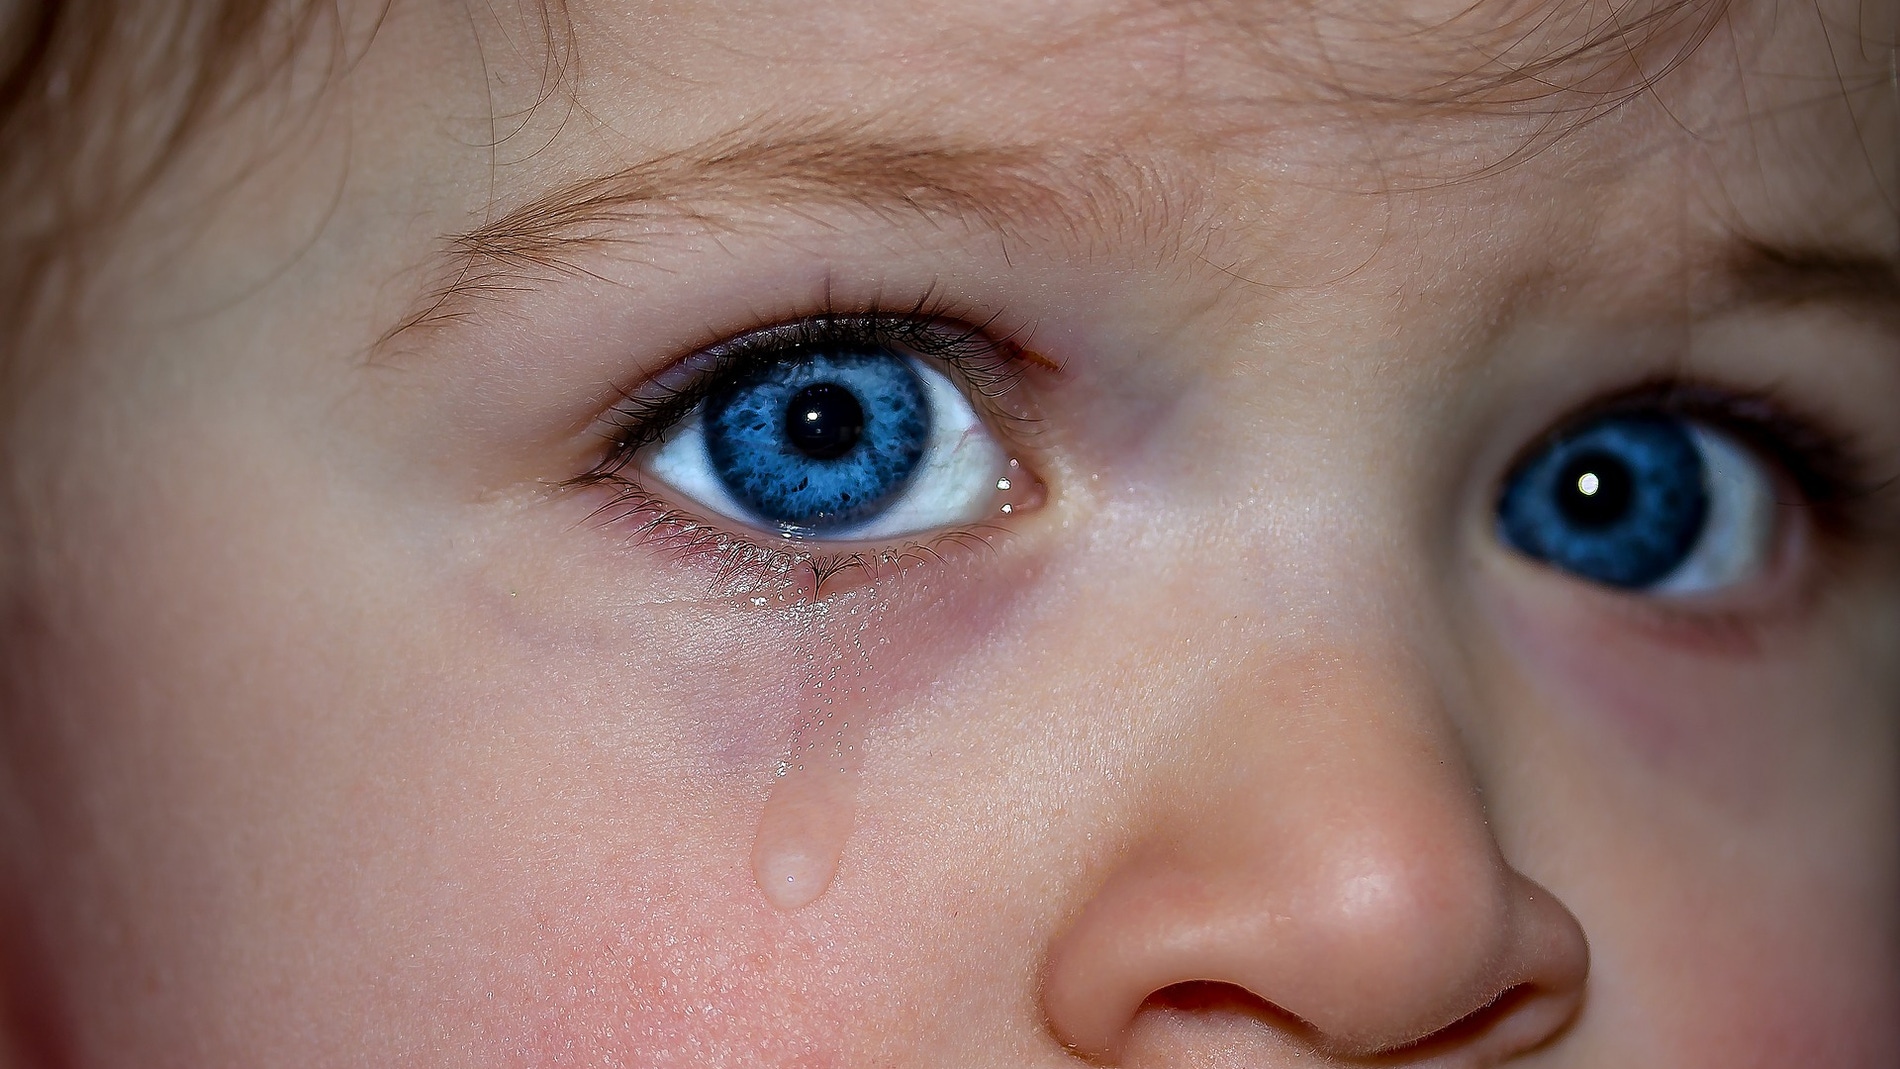 El OjoGel cambia de color al entrar en contacto con la lágrima 